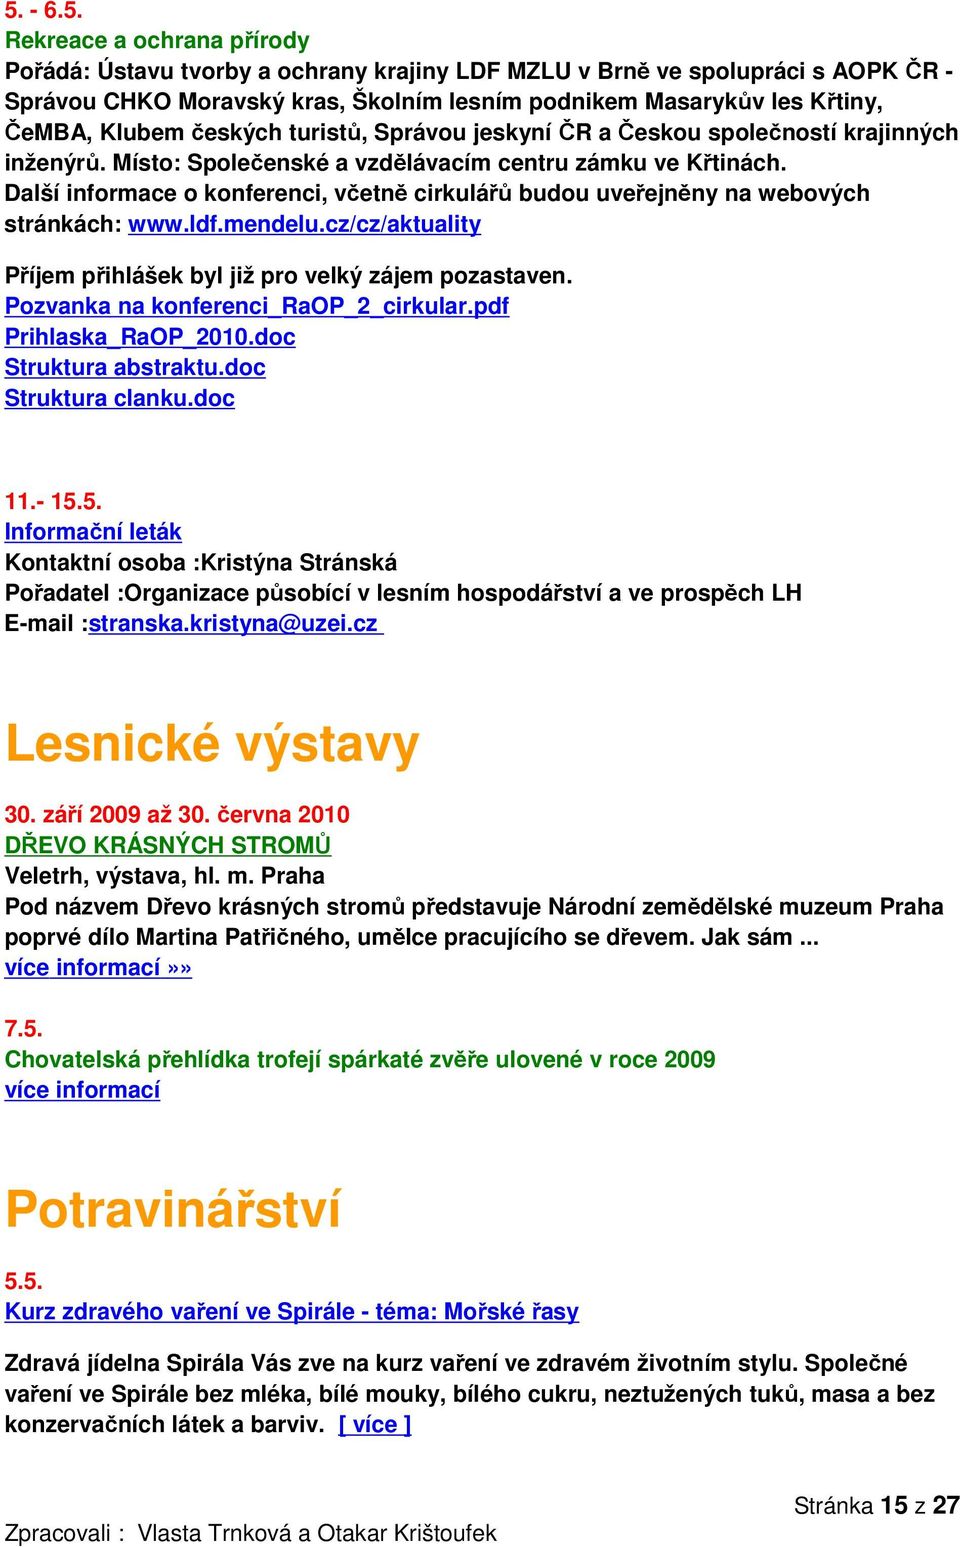 Další informace o konferenci, včetně cirkulářů budou uveřejněny na webových stránkách: www.ldf.mendelu.cz/cz/aktuality Příjem přihlášek byl již pro velký zájem pozastaven.